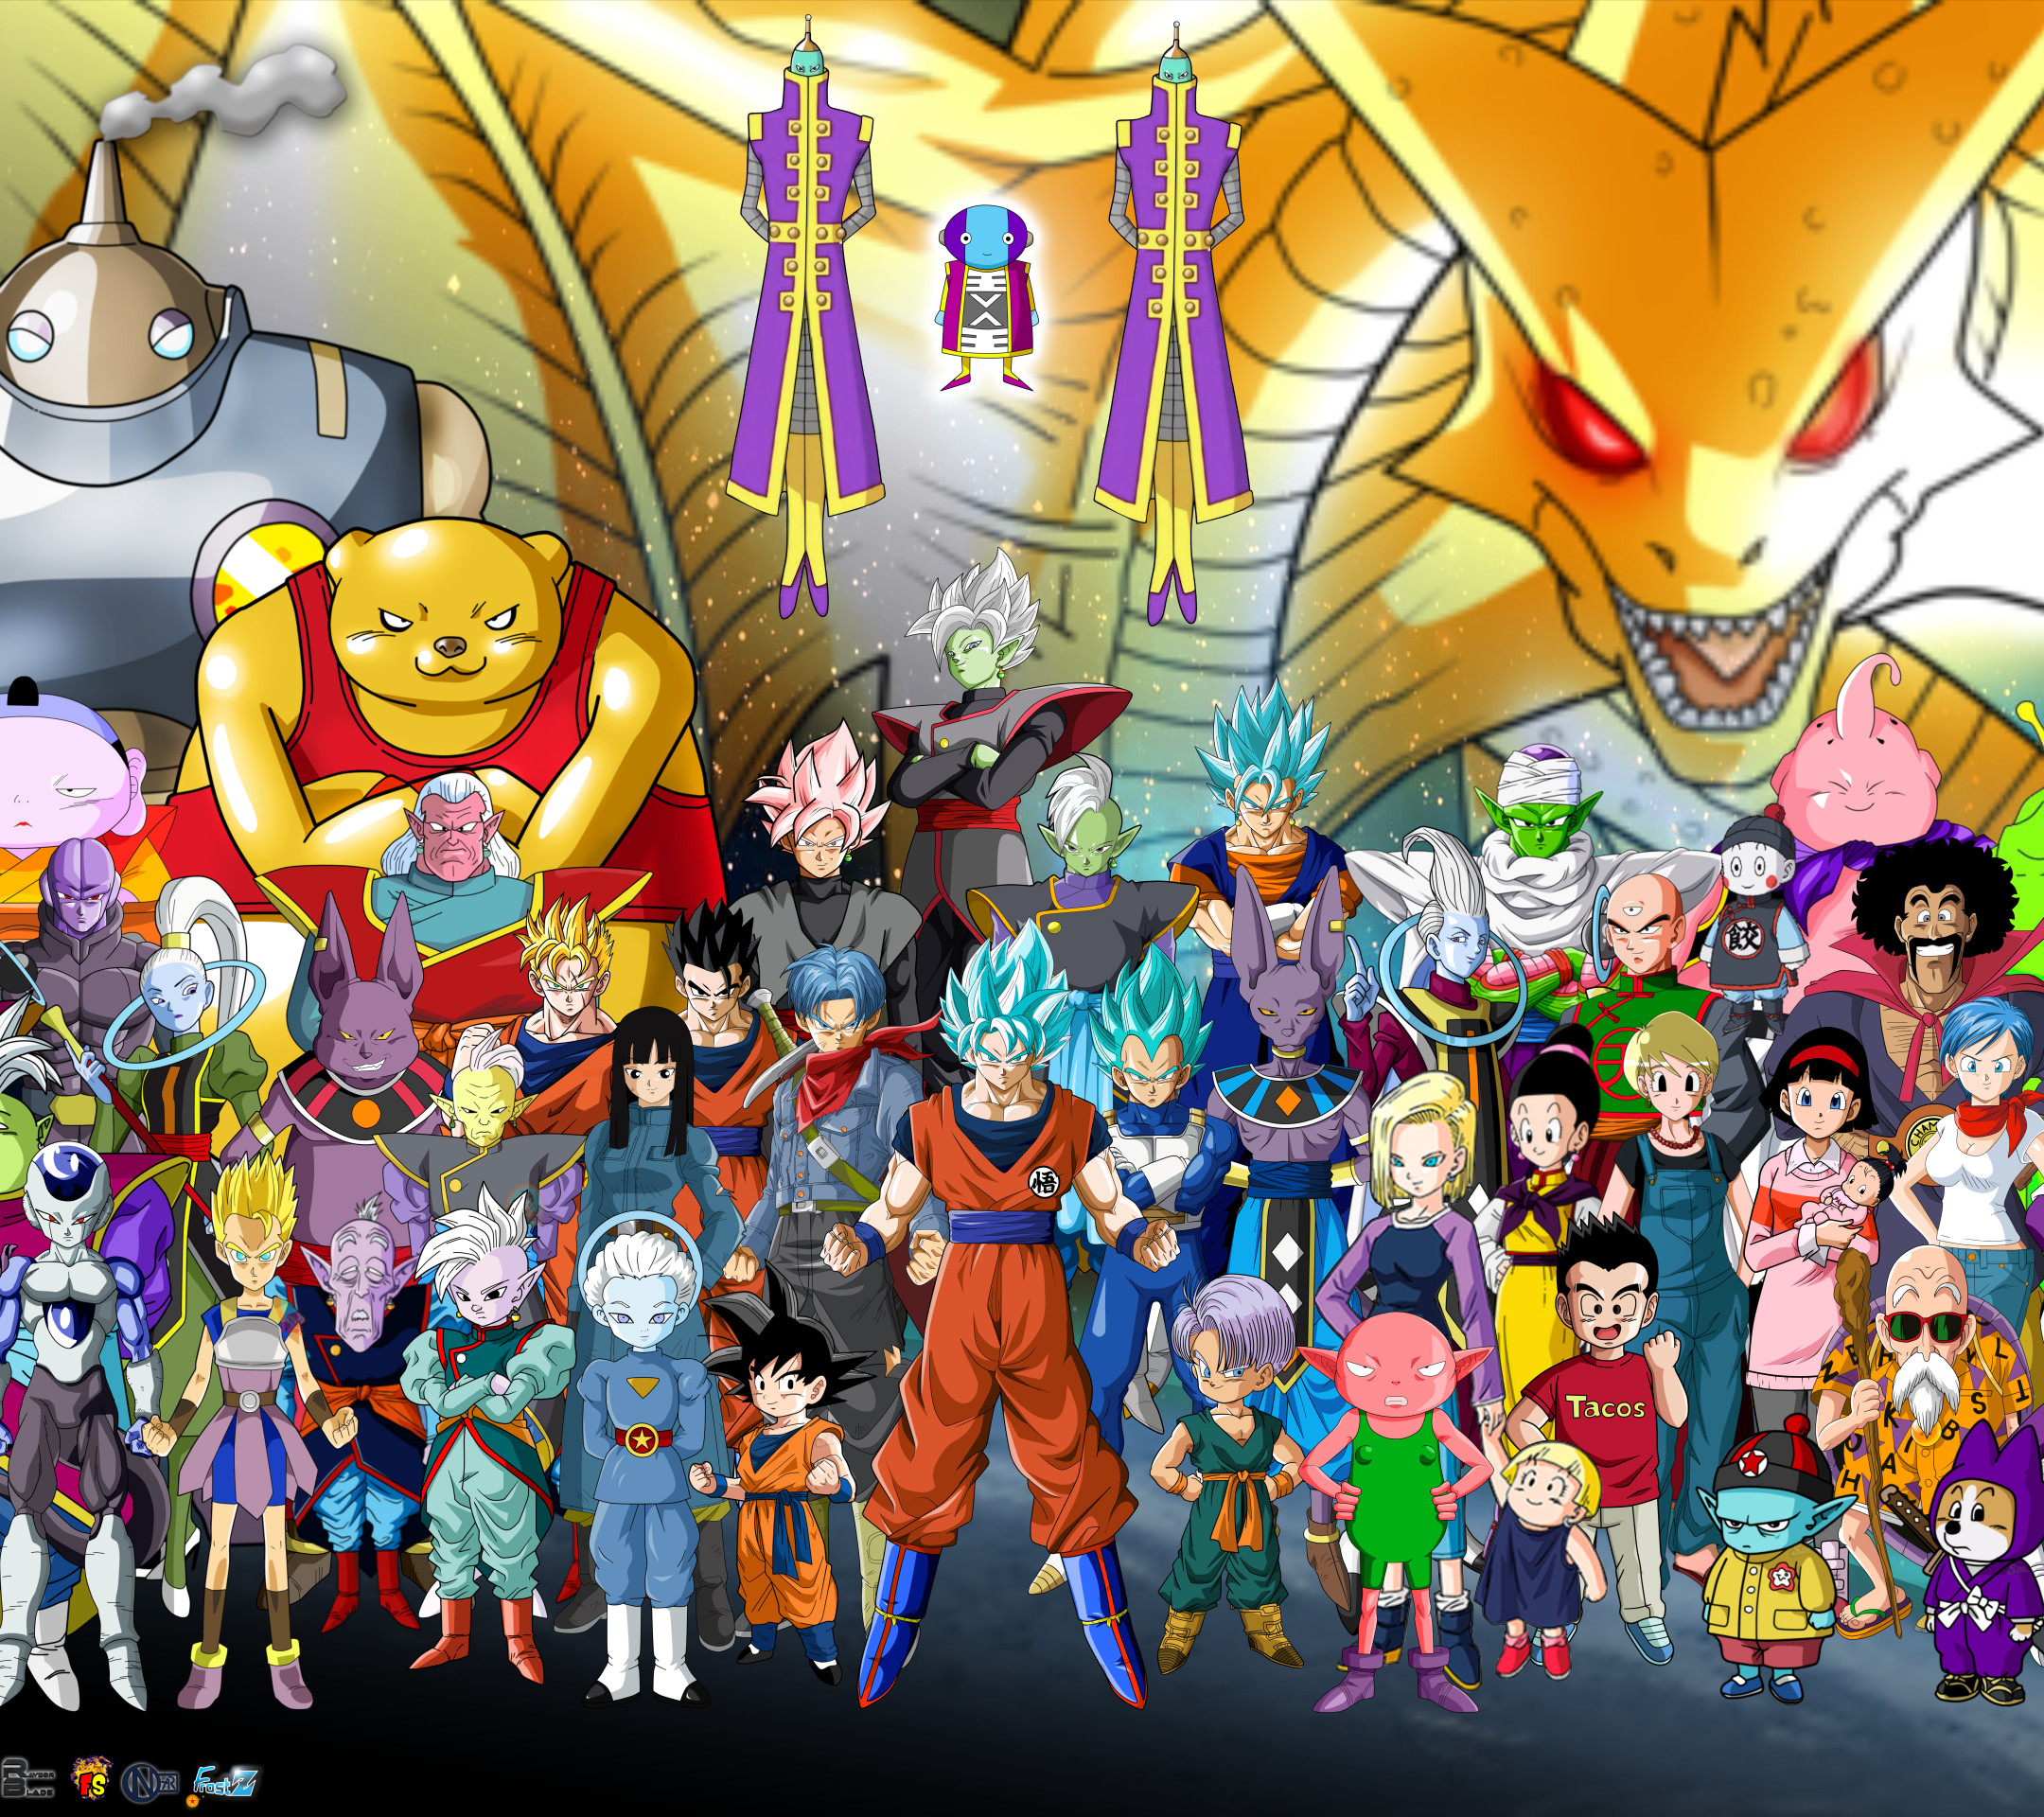 fond d'écran de dragon ball super,dessin animé,dessin animé,héros,anime,personnage fictif